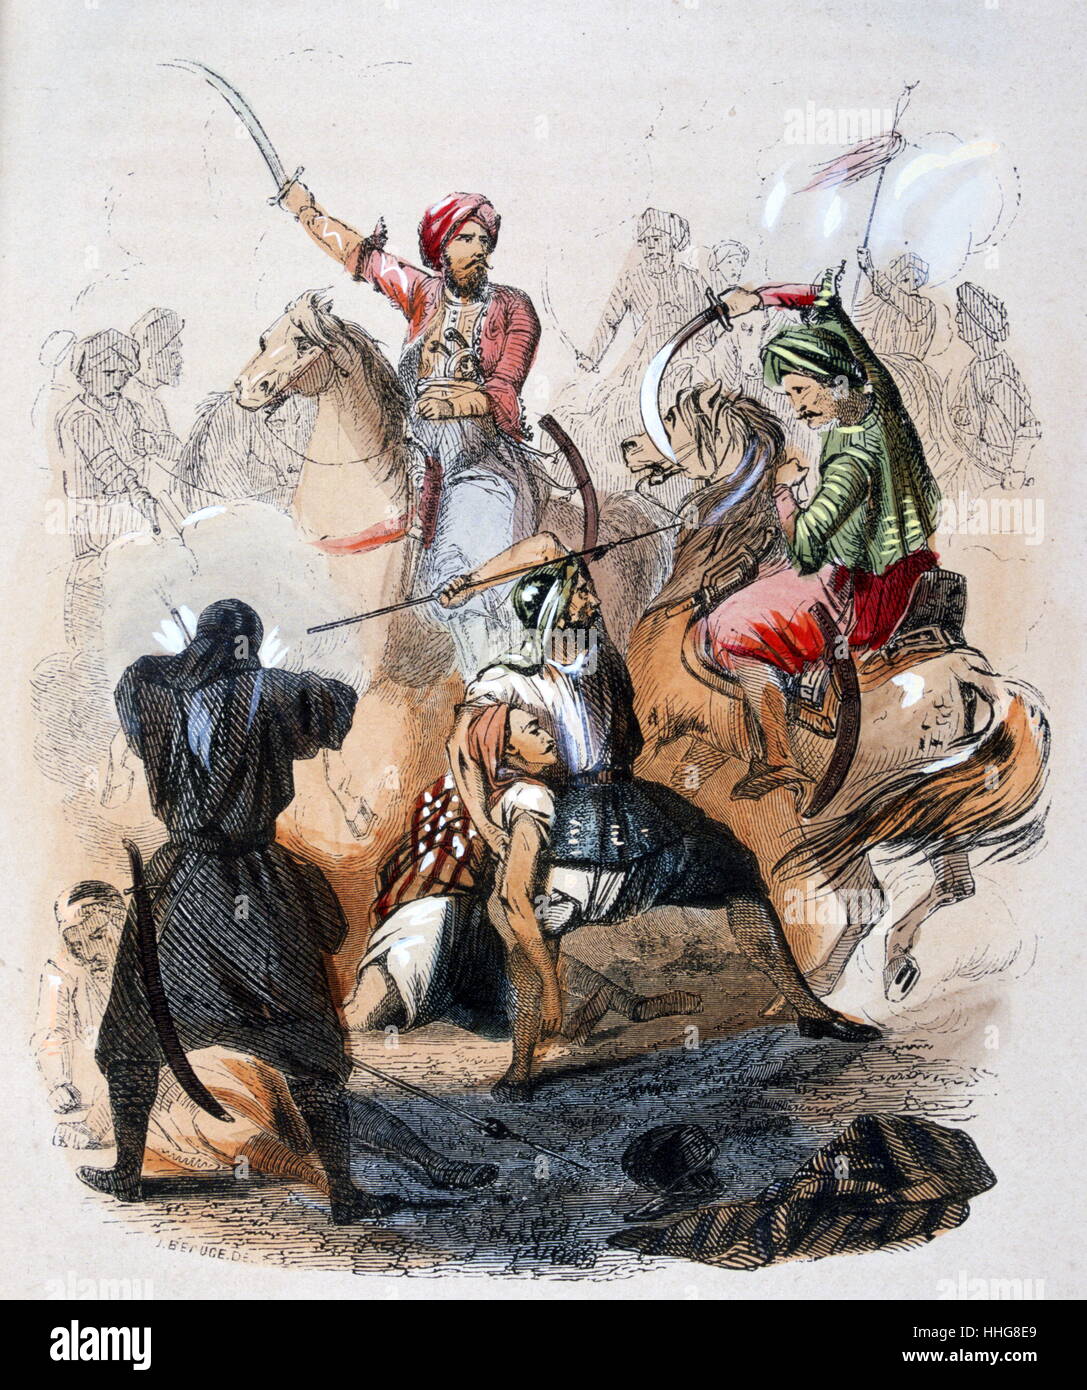 Ibrahim Pacha (fils aîné de Mohammed Ali) au cours d'une bataille en France 1818. Aquarelle réalisée par le peintre français Jean-Adolphe Beaucé (1818 - 1875). Ibrahim Pacha (1789-1848) avait ordonné à l'armée égyptienne. Après que son père est devenu sénile, Ibrahim gouvernait l'Égypte. Banque D'Images